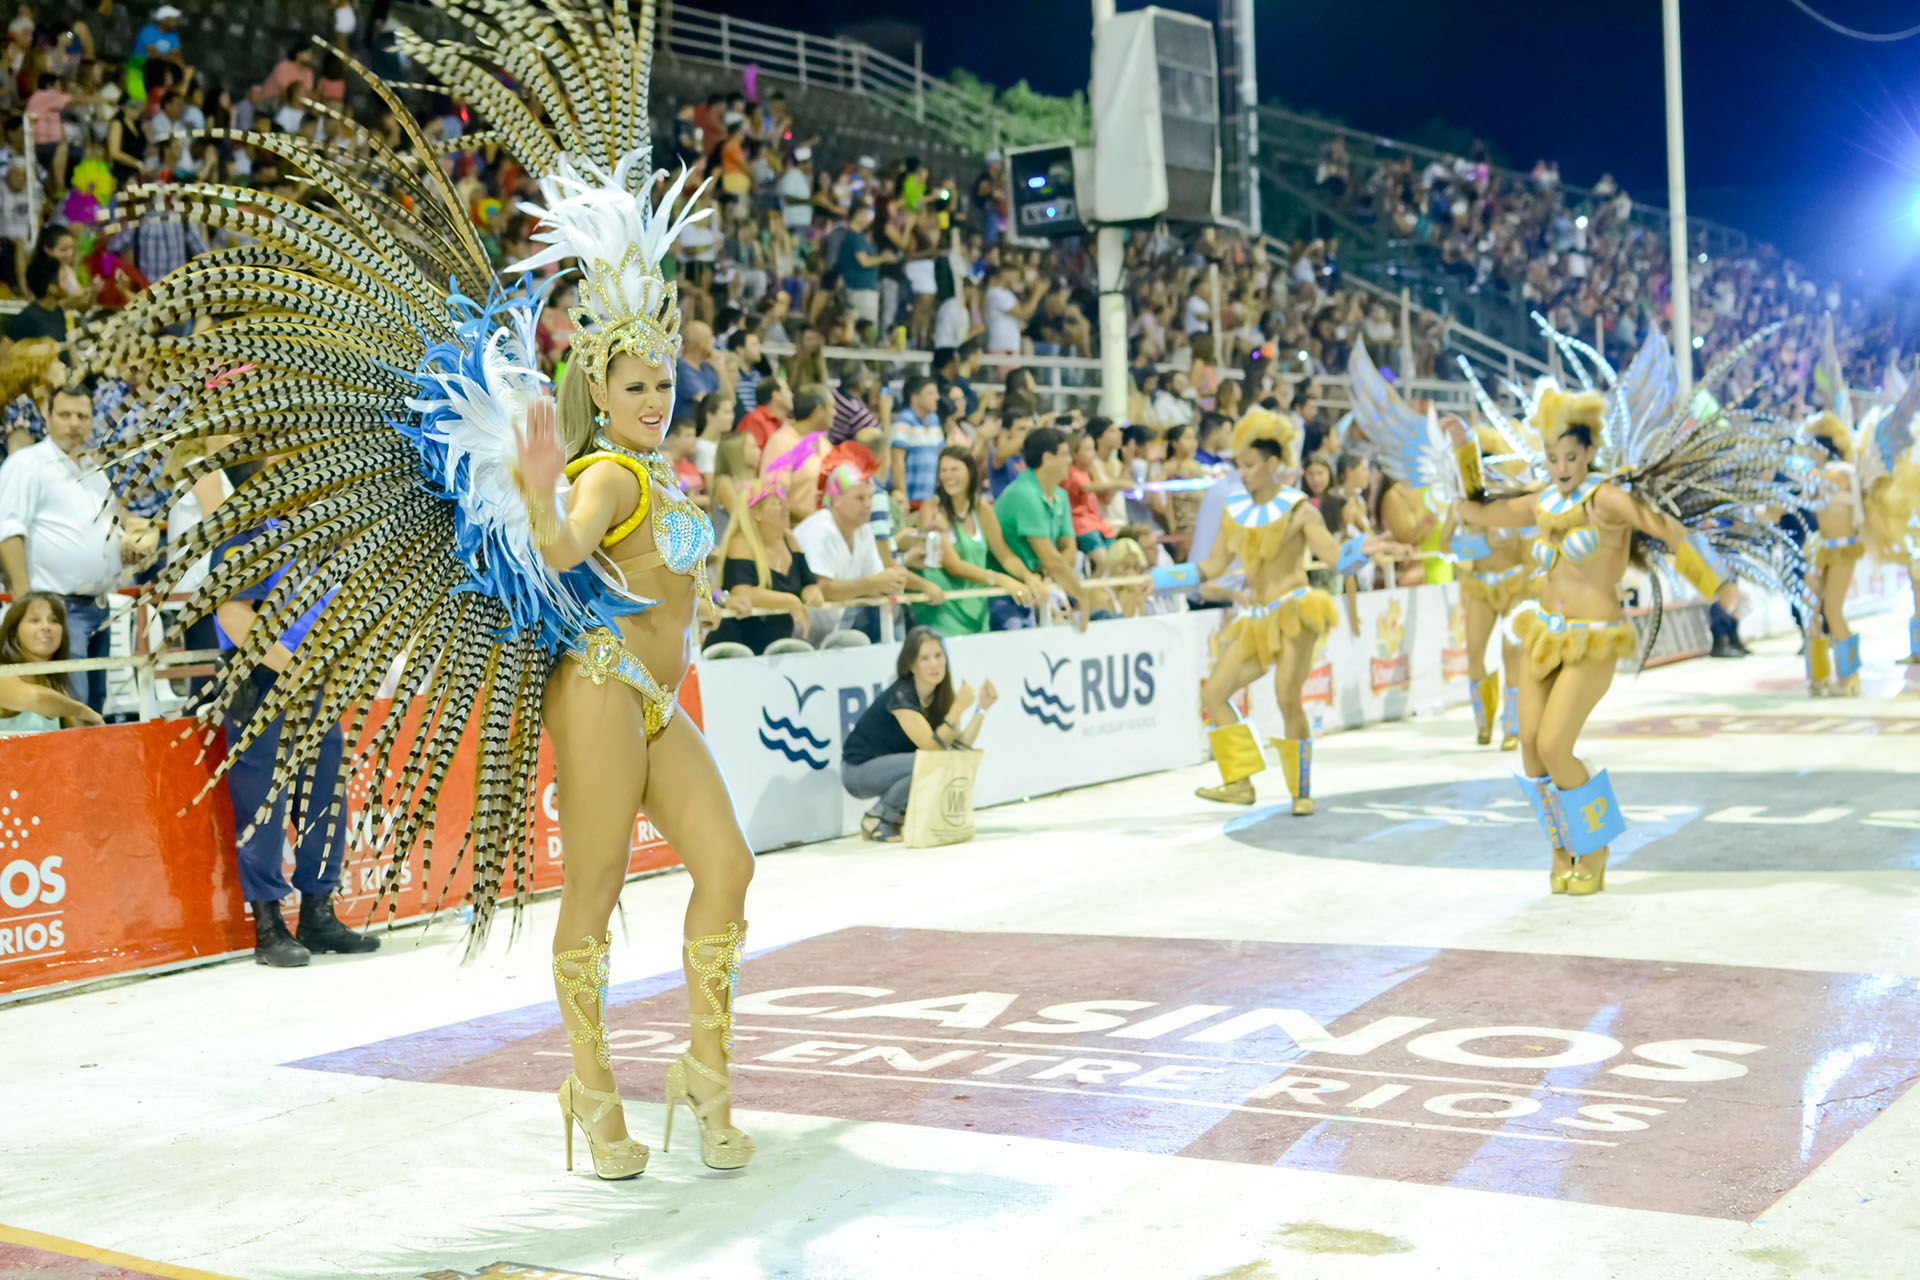 Los destinos turísticos con tradición de carnaval, como Entre Ríos, Corrientes, Tucumán y Jujuy, fueron los más destacados en el fin de semana extra large